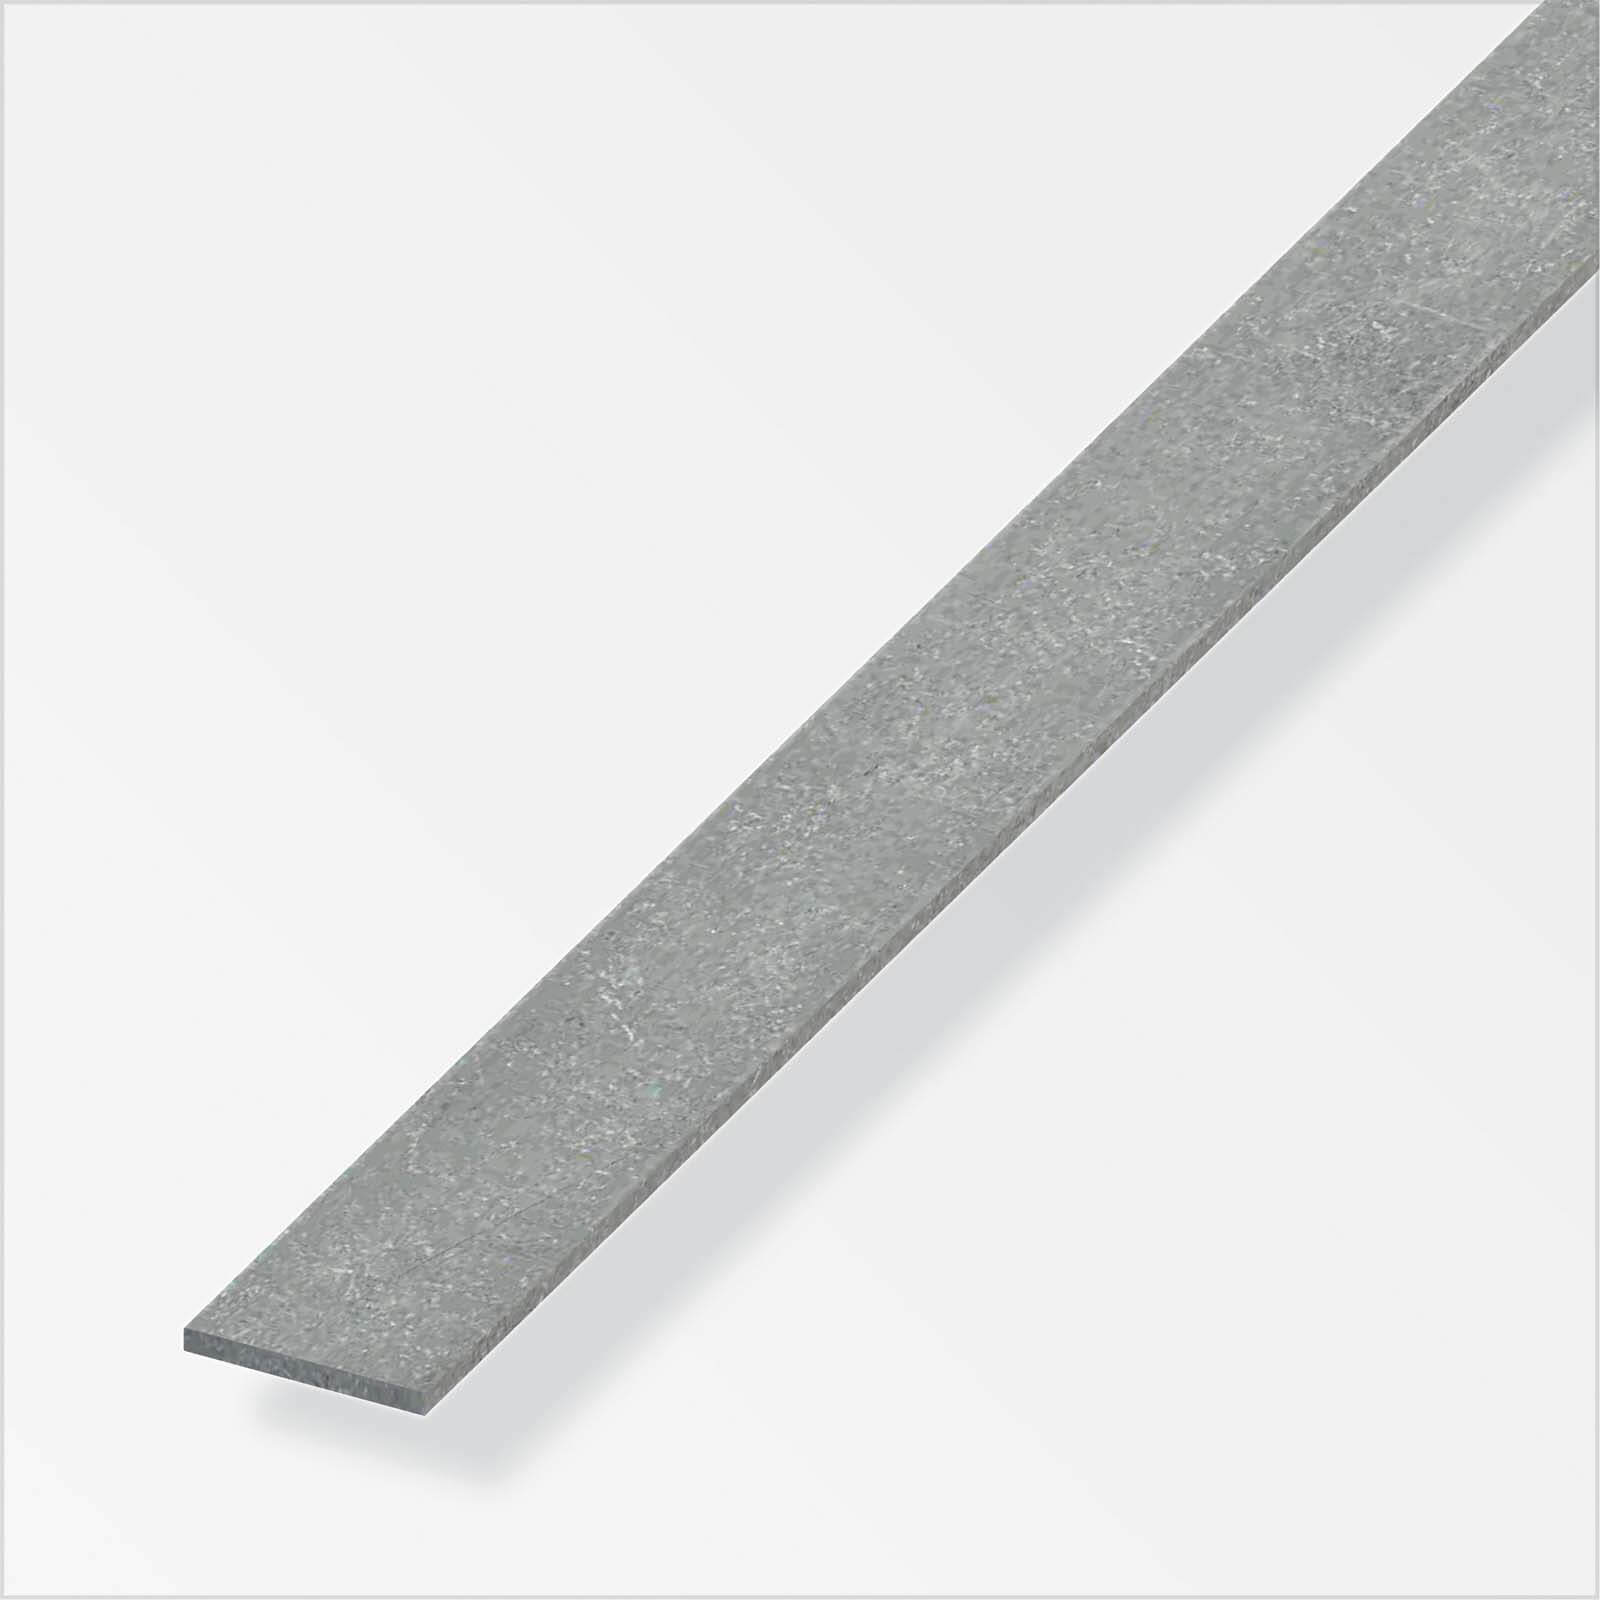 Drawn Steel Flat Bar Profile - 1m x 30mm